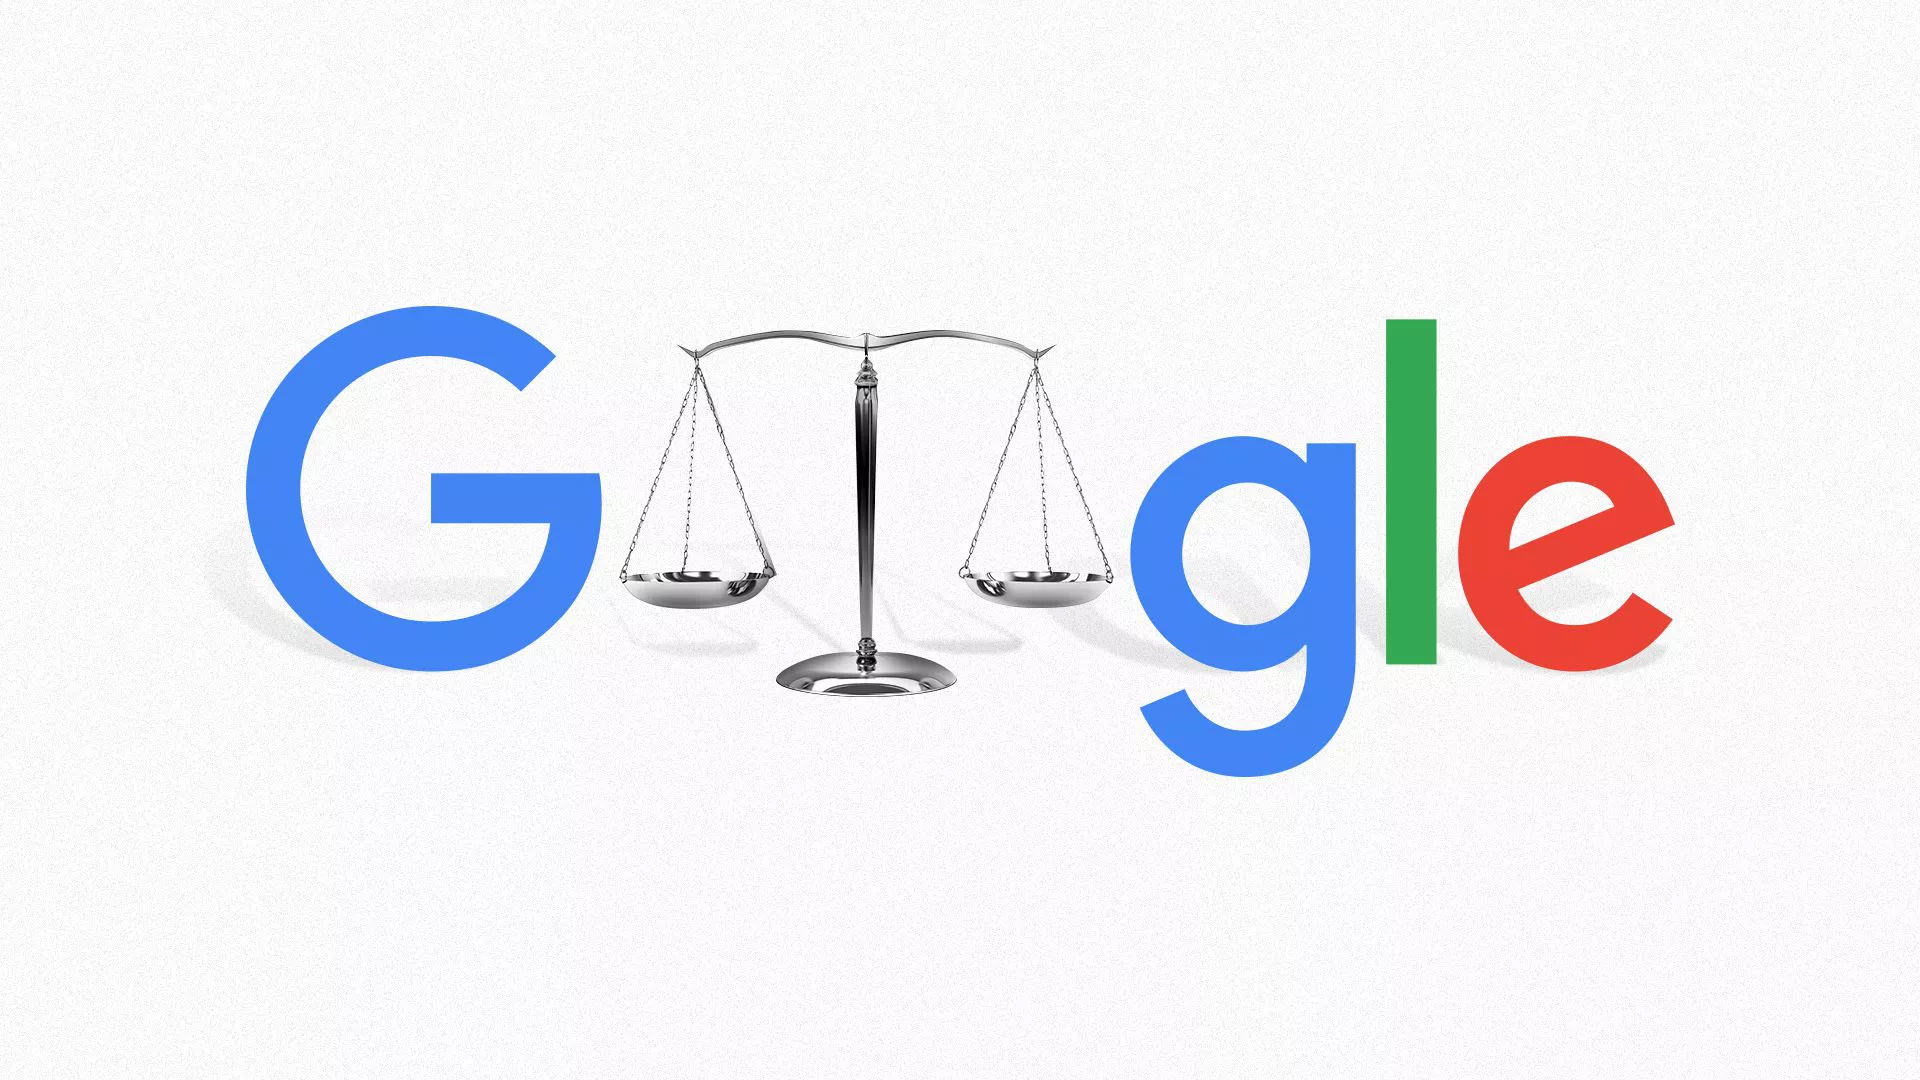 پرونده شکایت از گوگل بابت انحصارطلبی